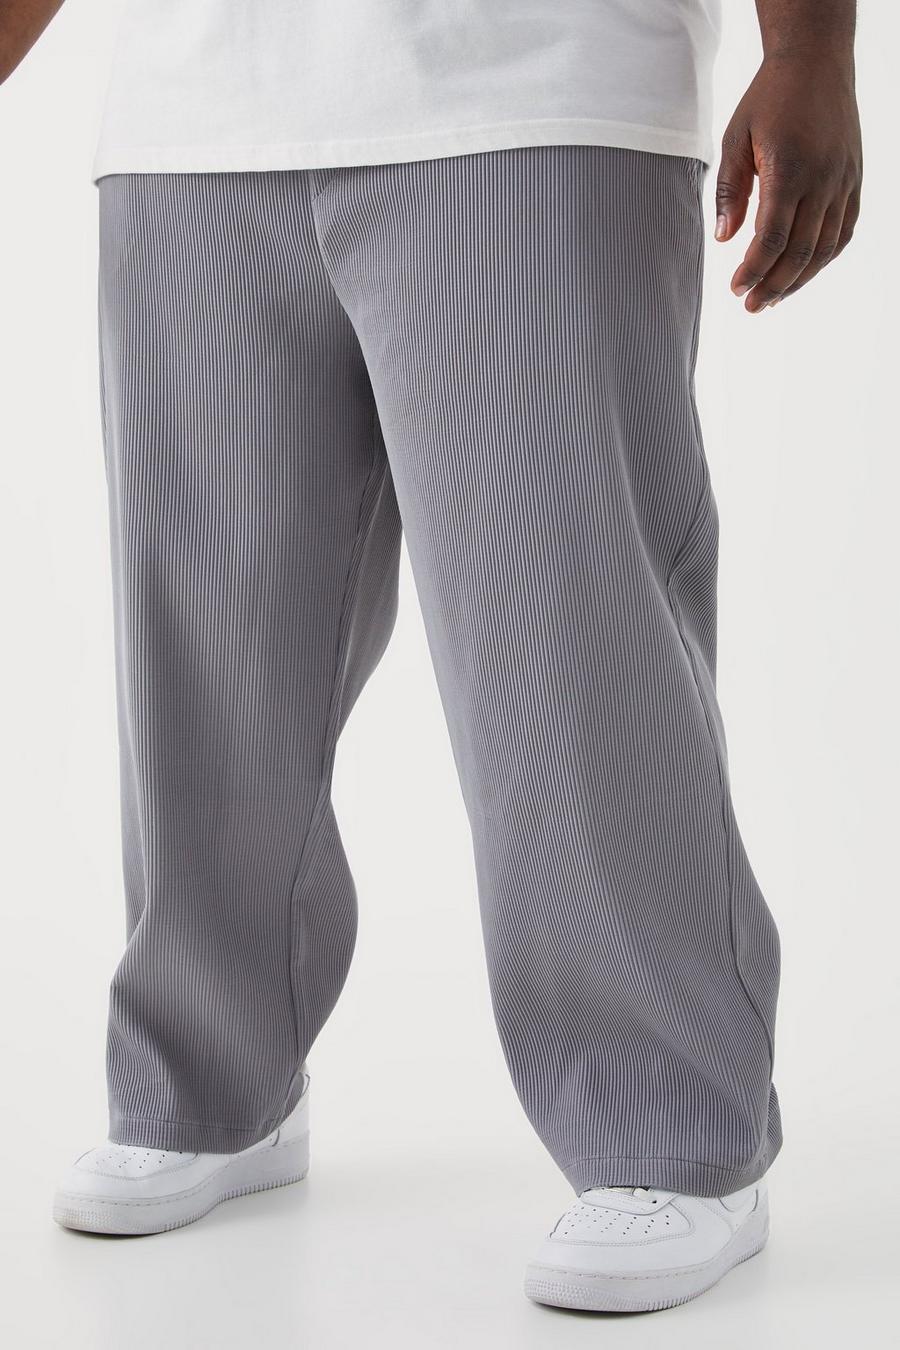 Pantalón Plus holgado plisado con cintura elástica, Charcoal grigio